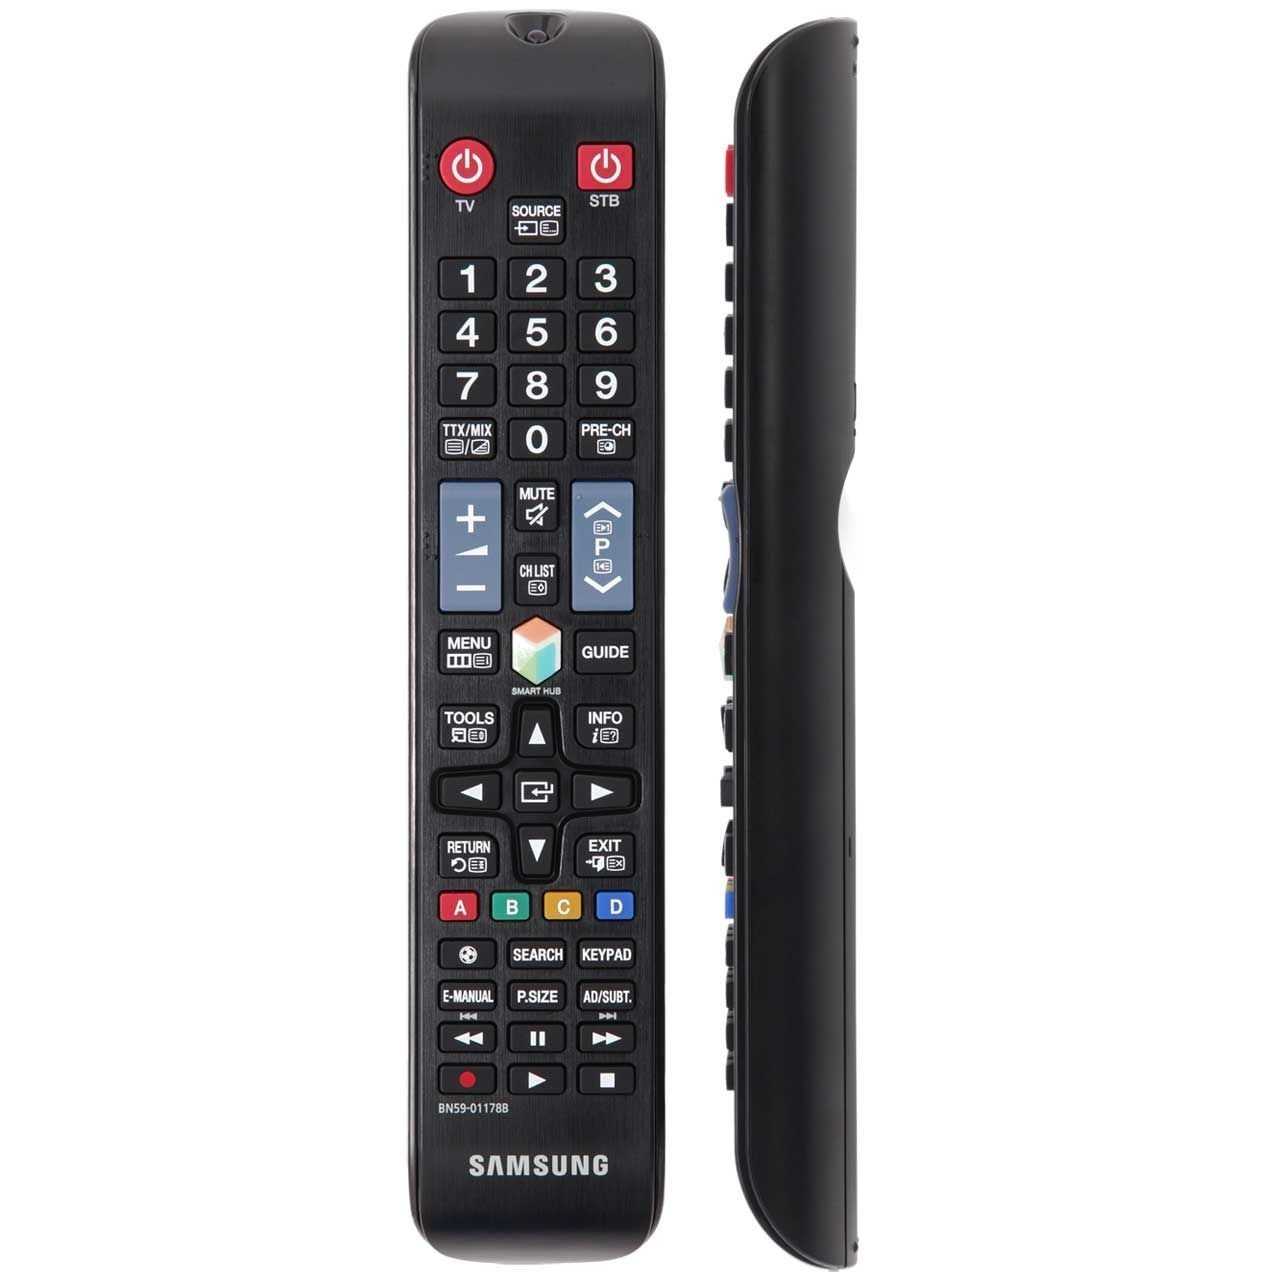 Led-телевизор samsung ue22h5600ak (черный) (ue22h5600akx) купить от 13989 руб в челябинске, сравнить цены, отзывы, видео обзоры и характеристики